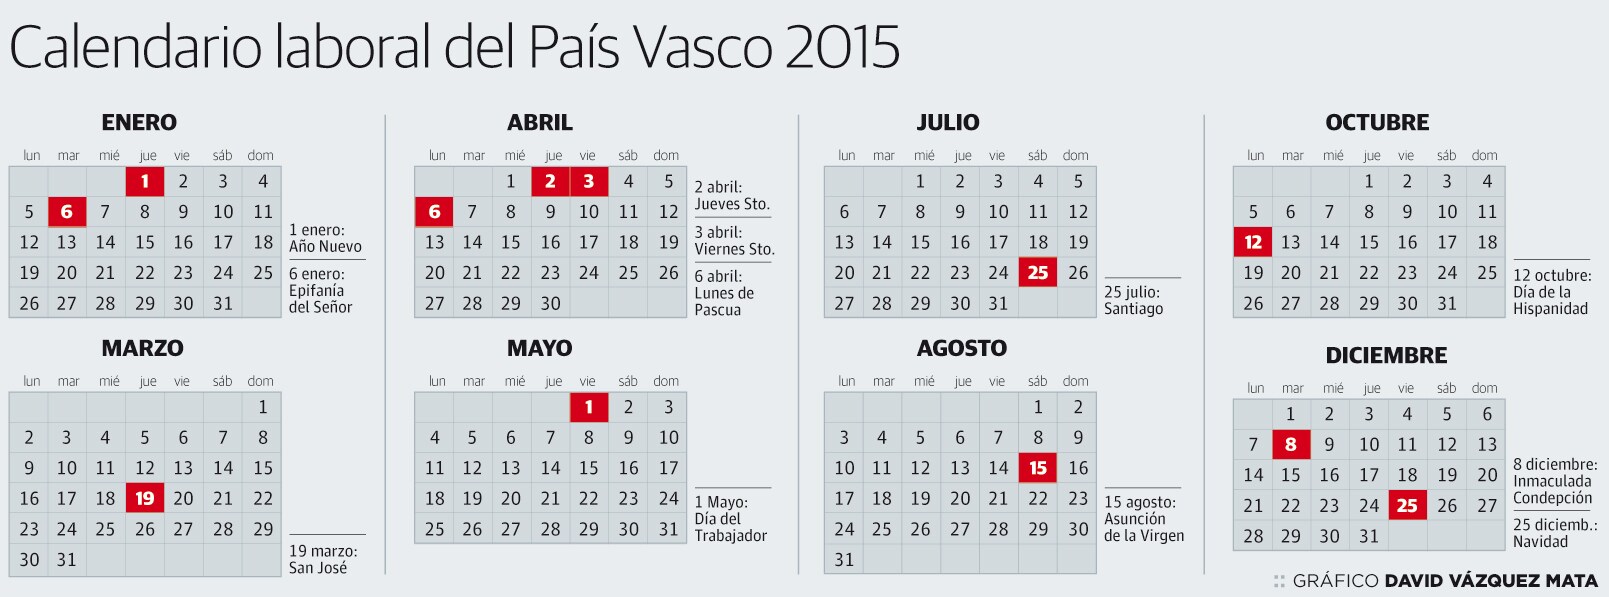 El calendario laboral de 2015 en Euskadi: 12 festivos en días laborales